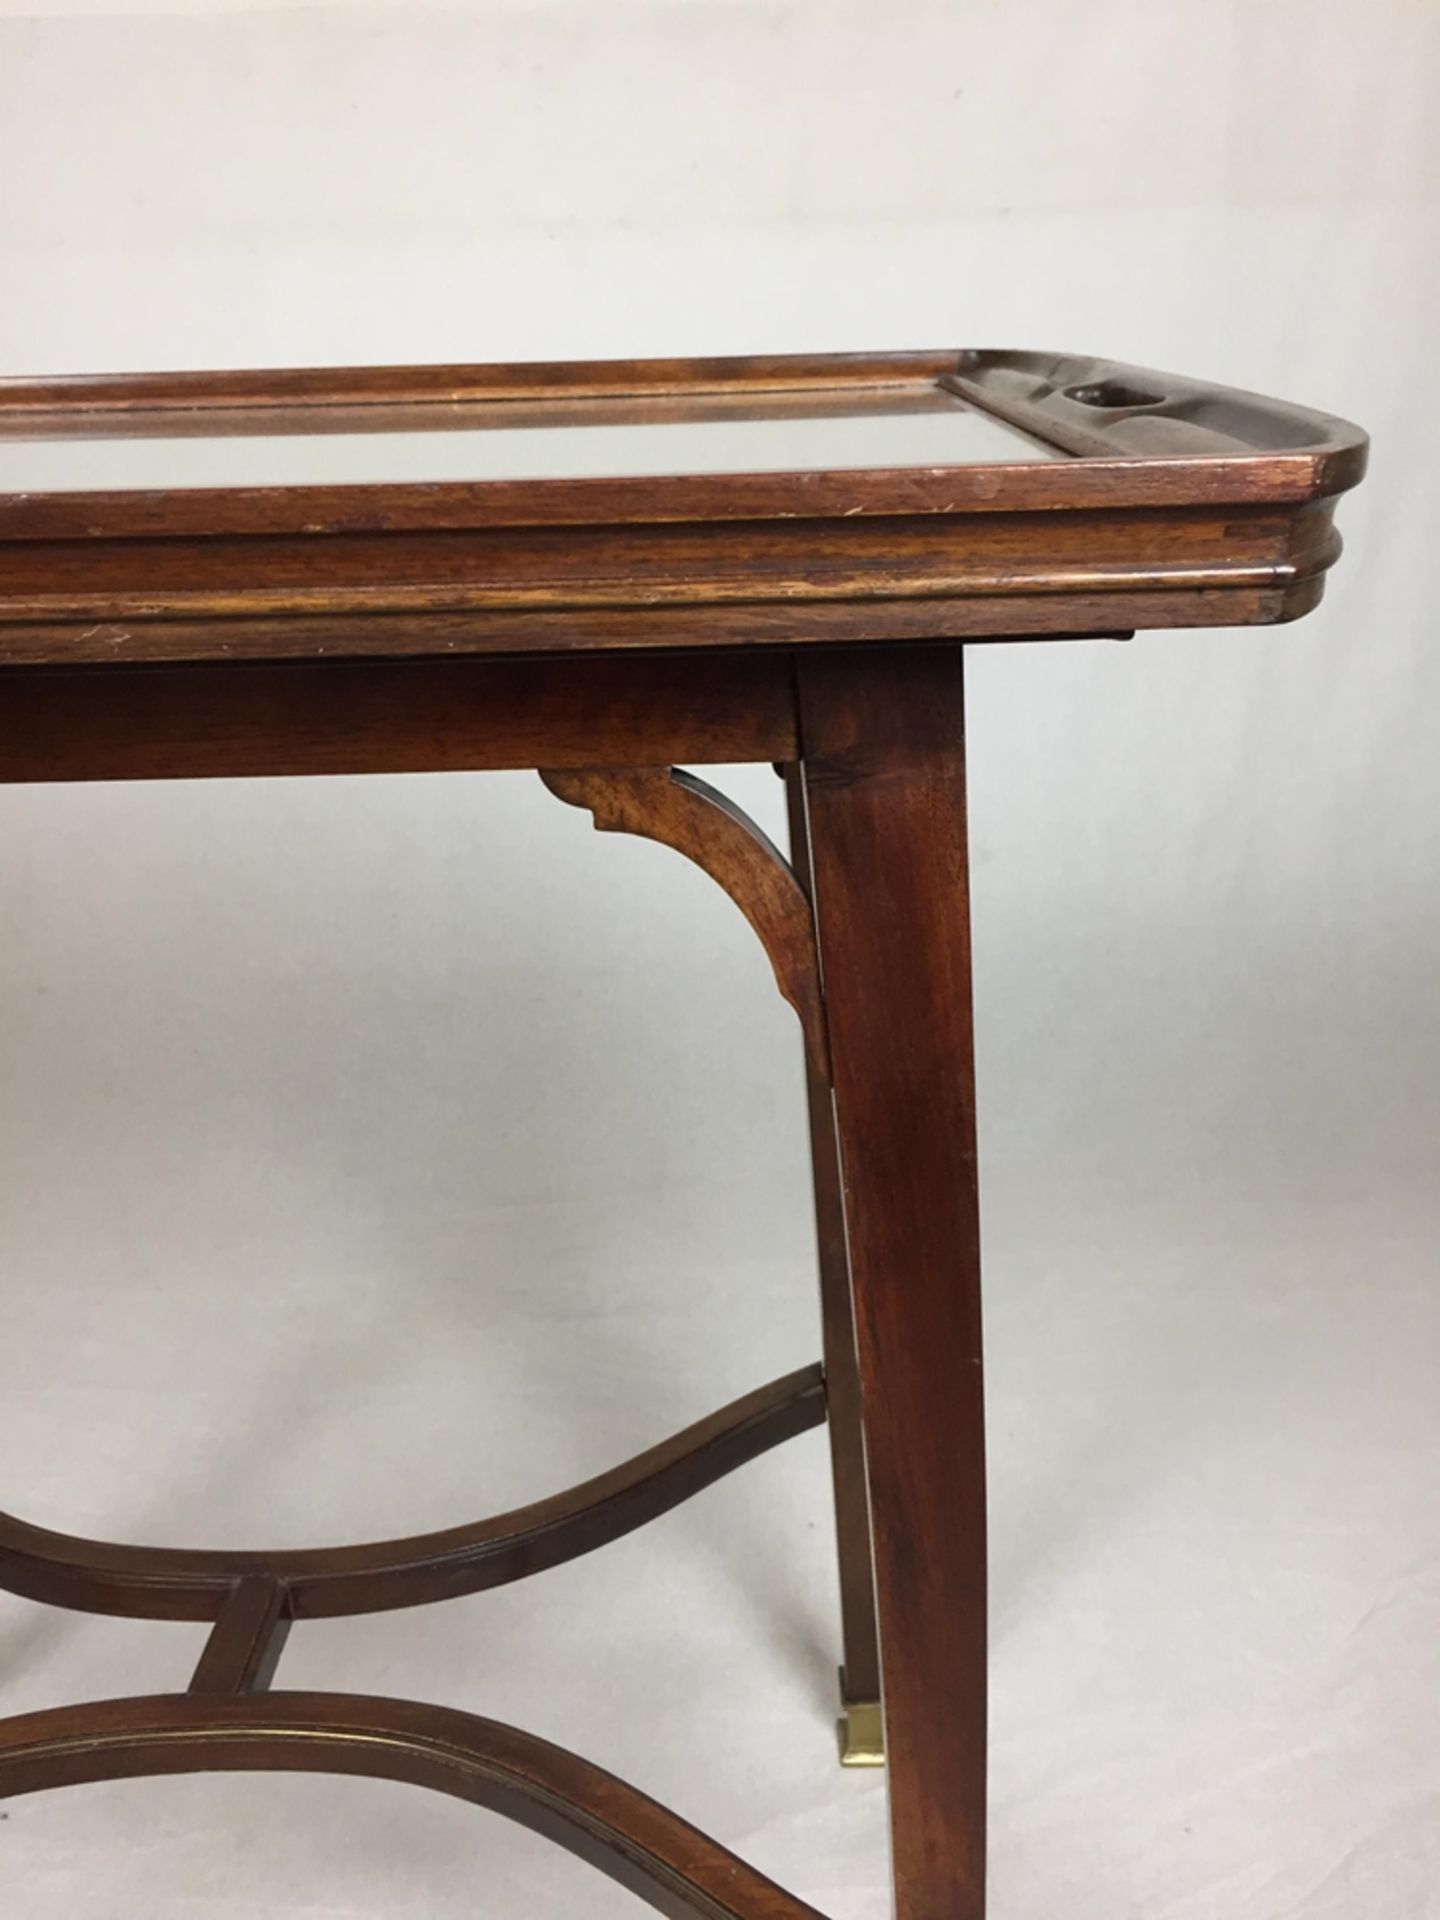 Jugendstil-Tabletttisch - um 1900, Mahagoni, rechteckige Tischplatte auf vier konischen Beinen, - Bild 6 aus 7